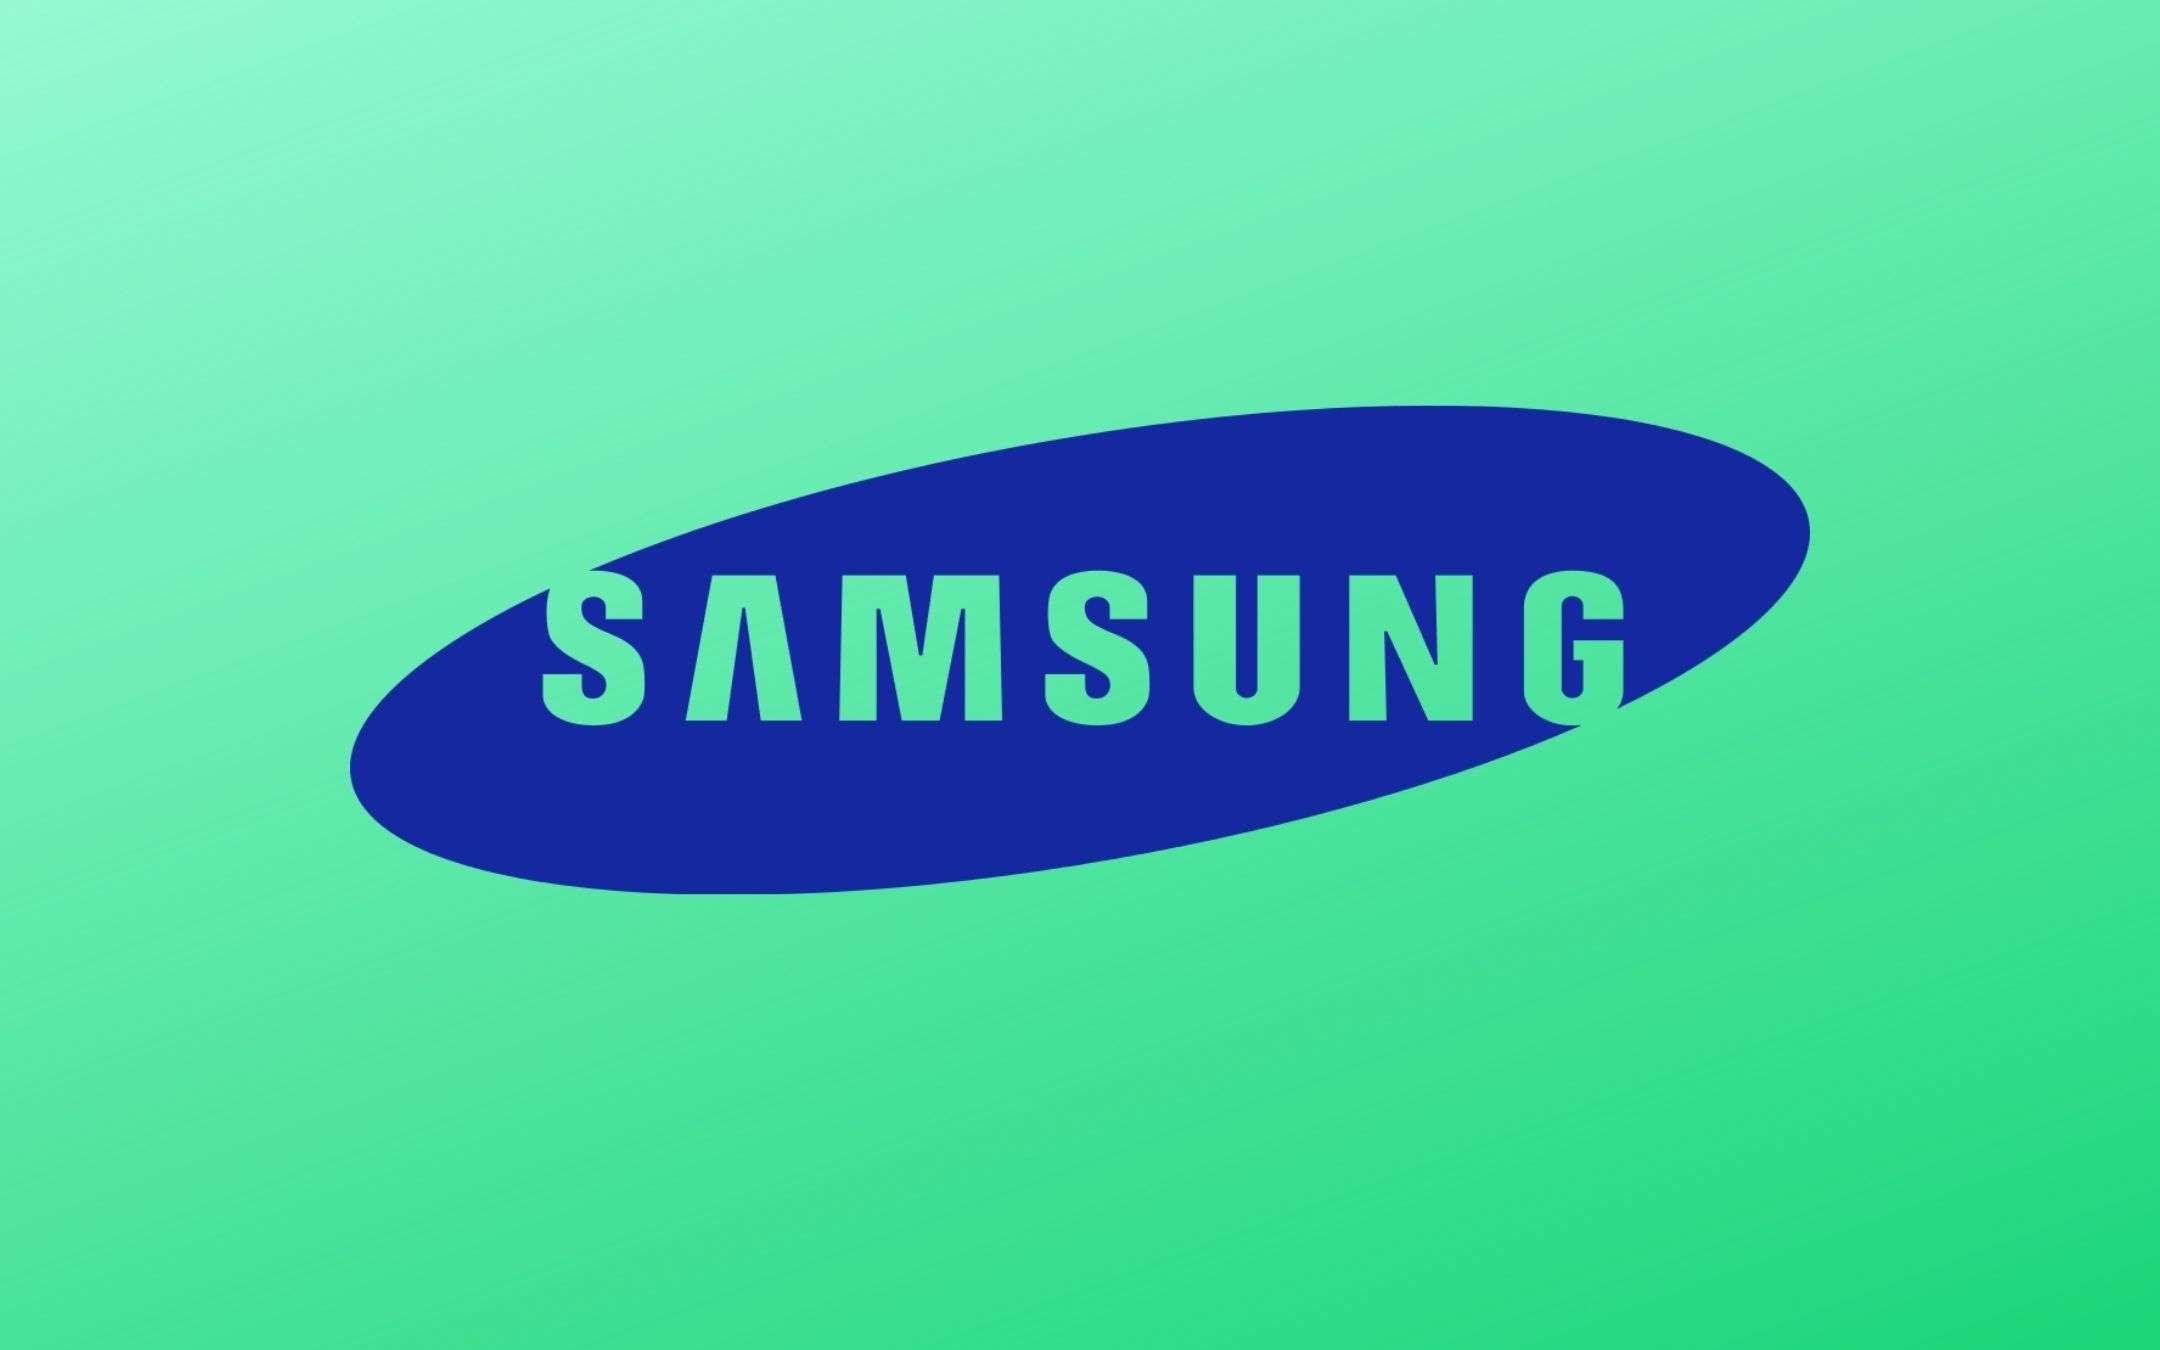 Samsung Galaxy S21 Ultra avrà una super batteria